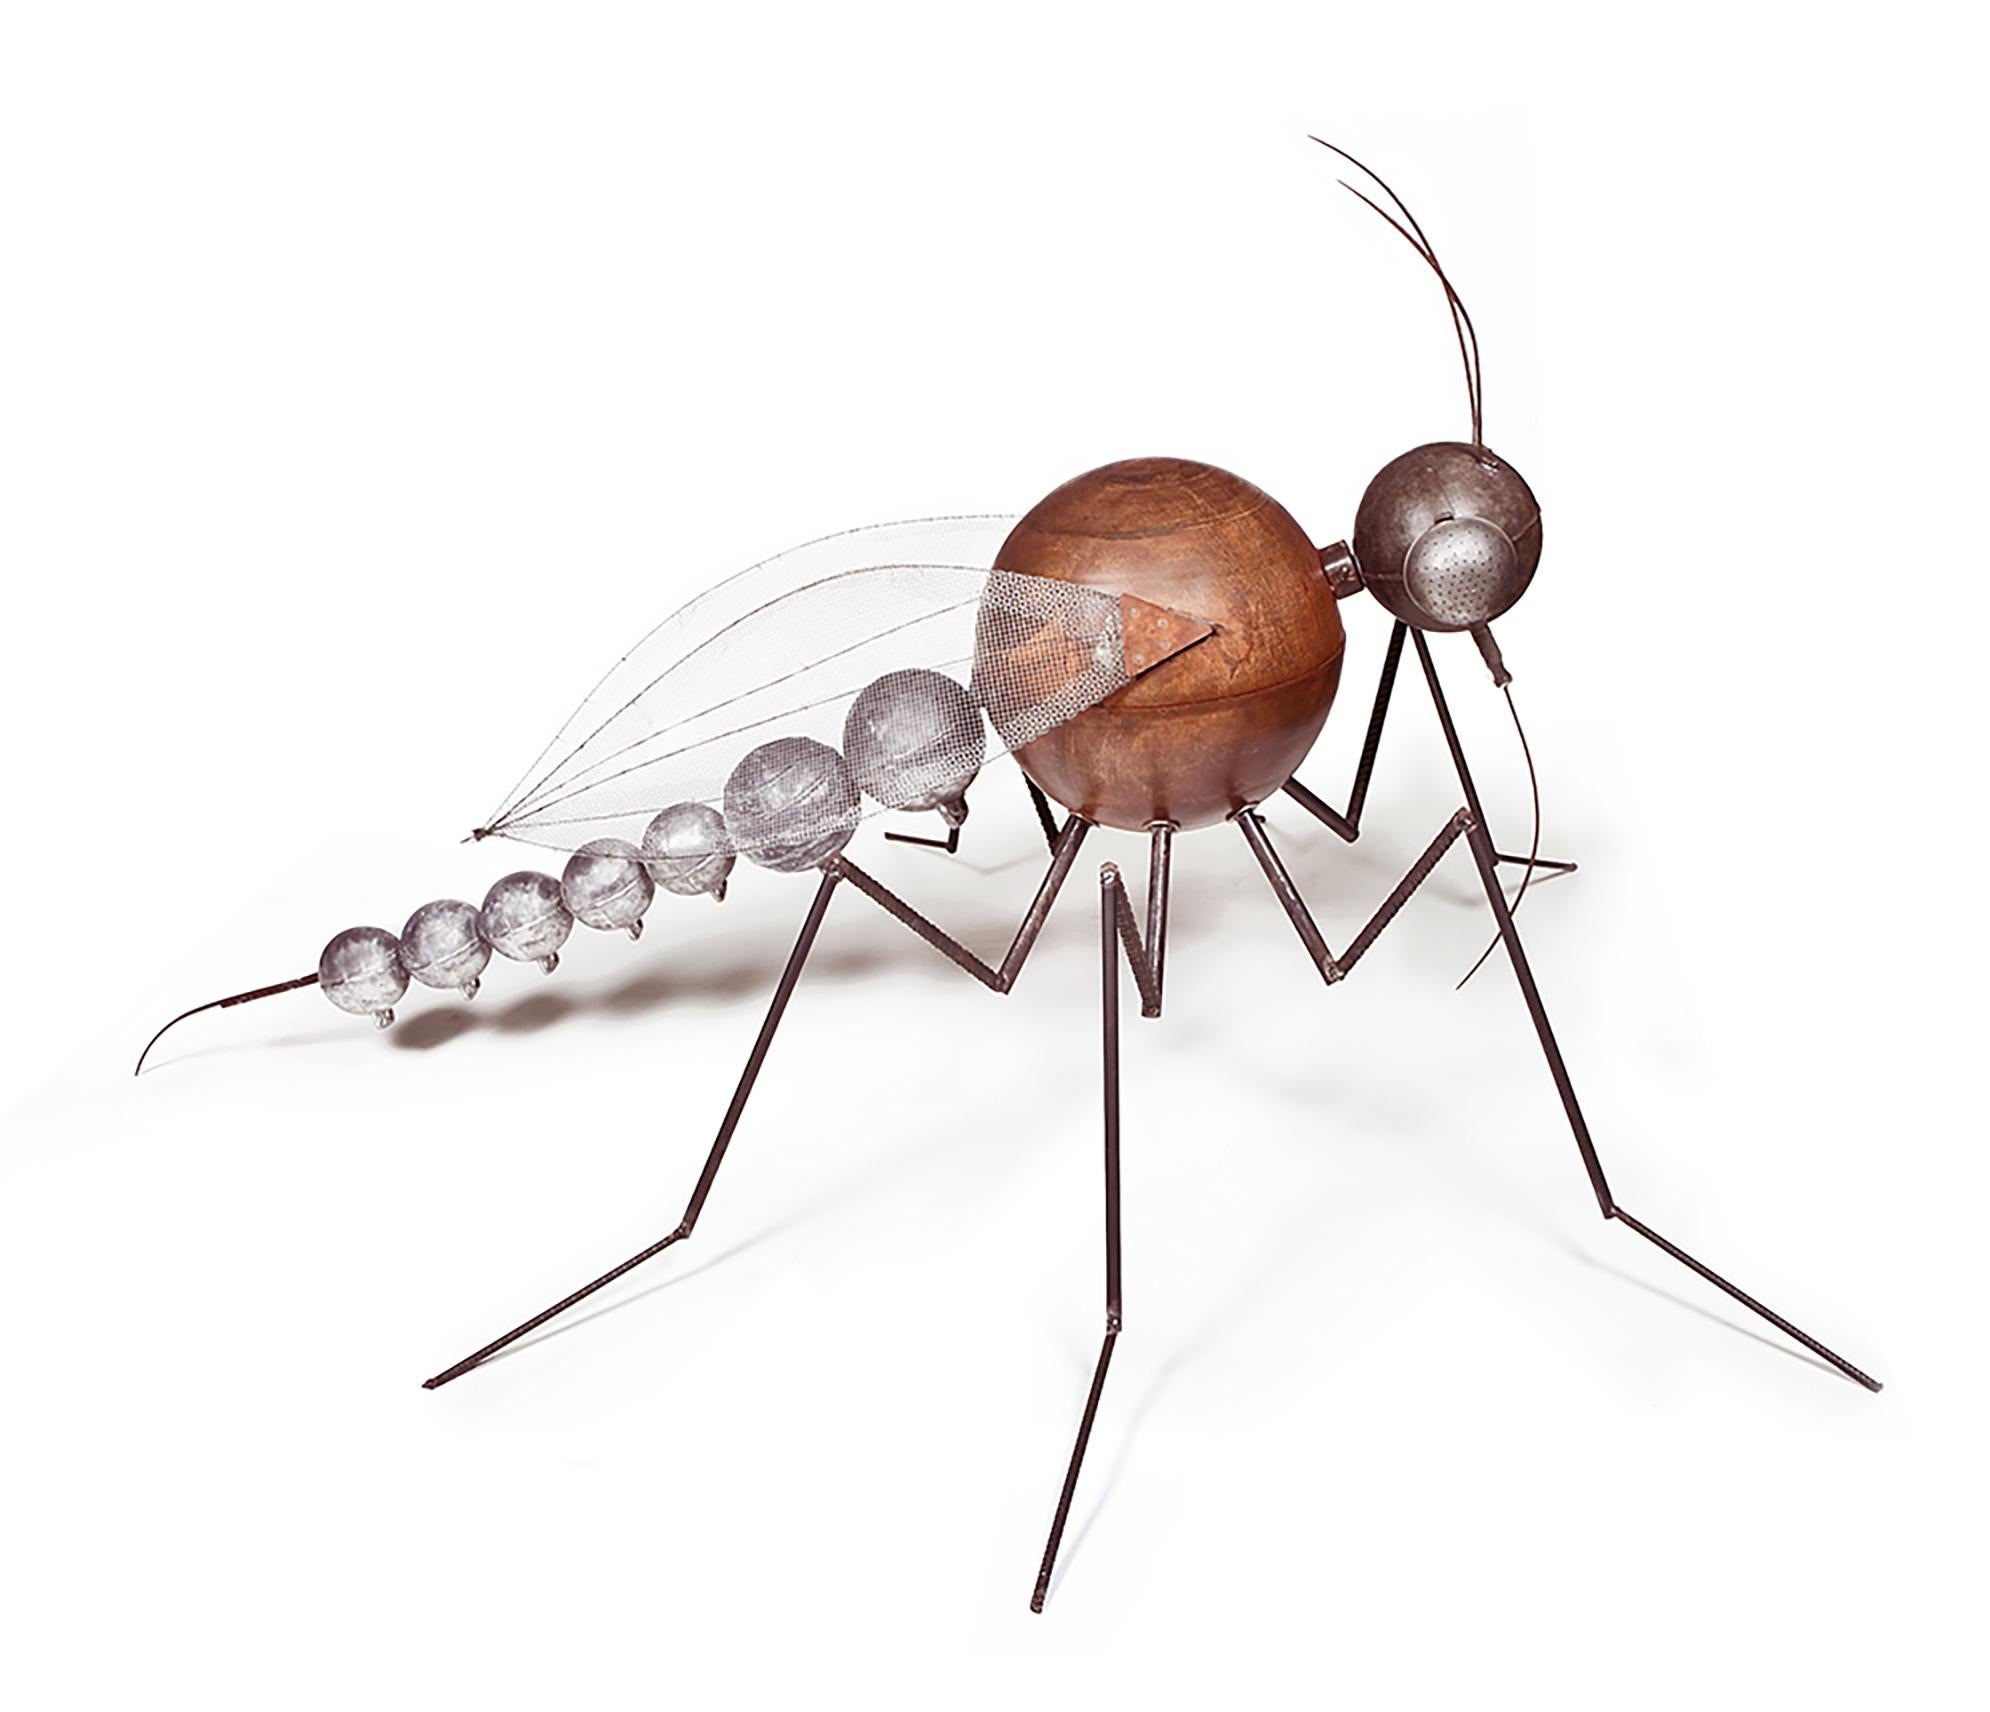 mosquito sculpture